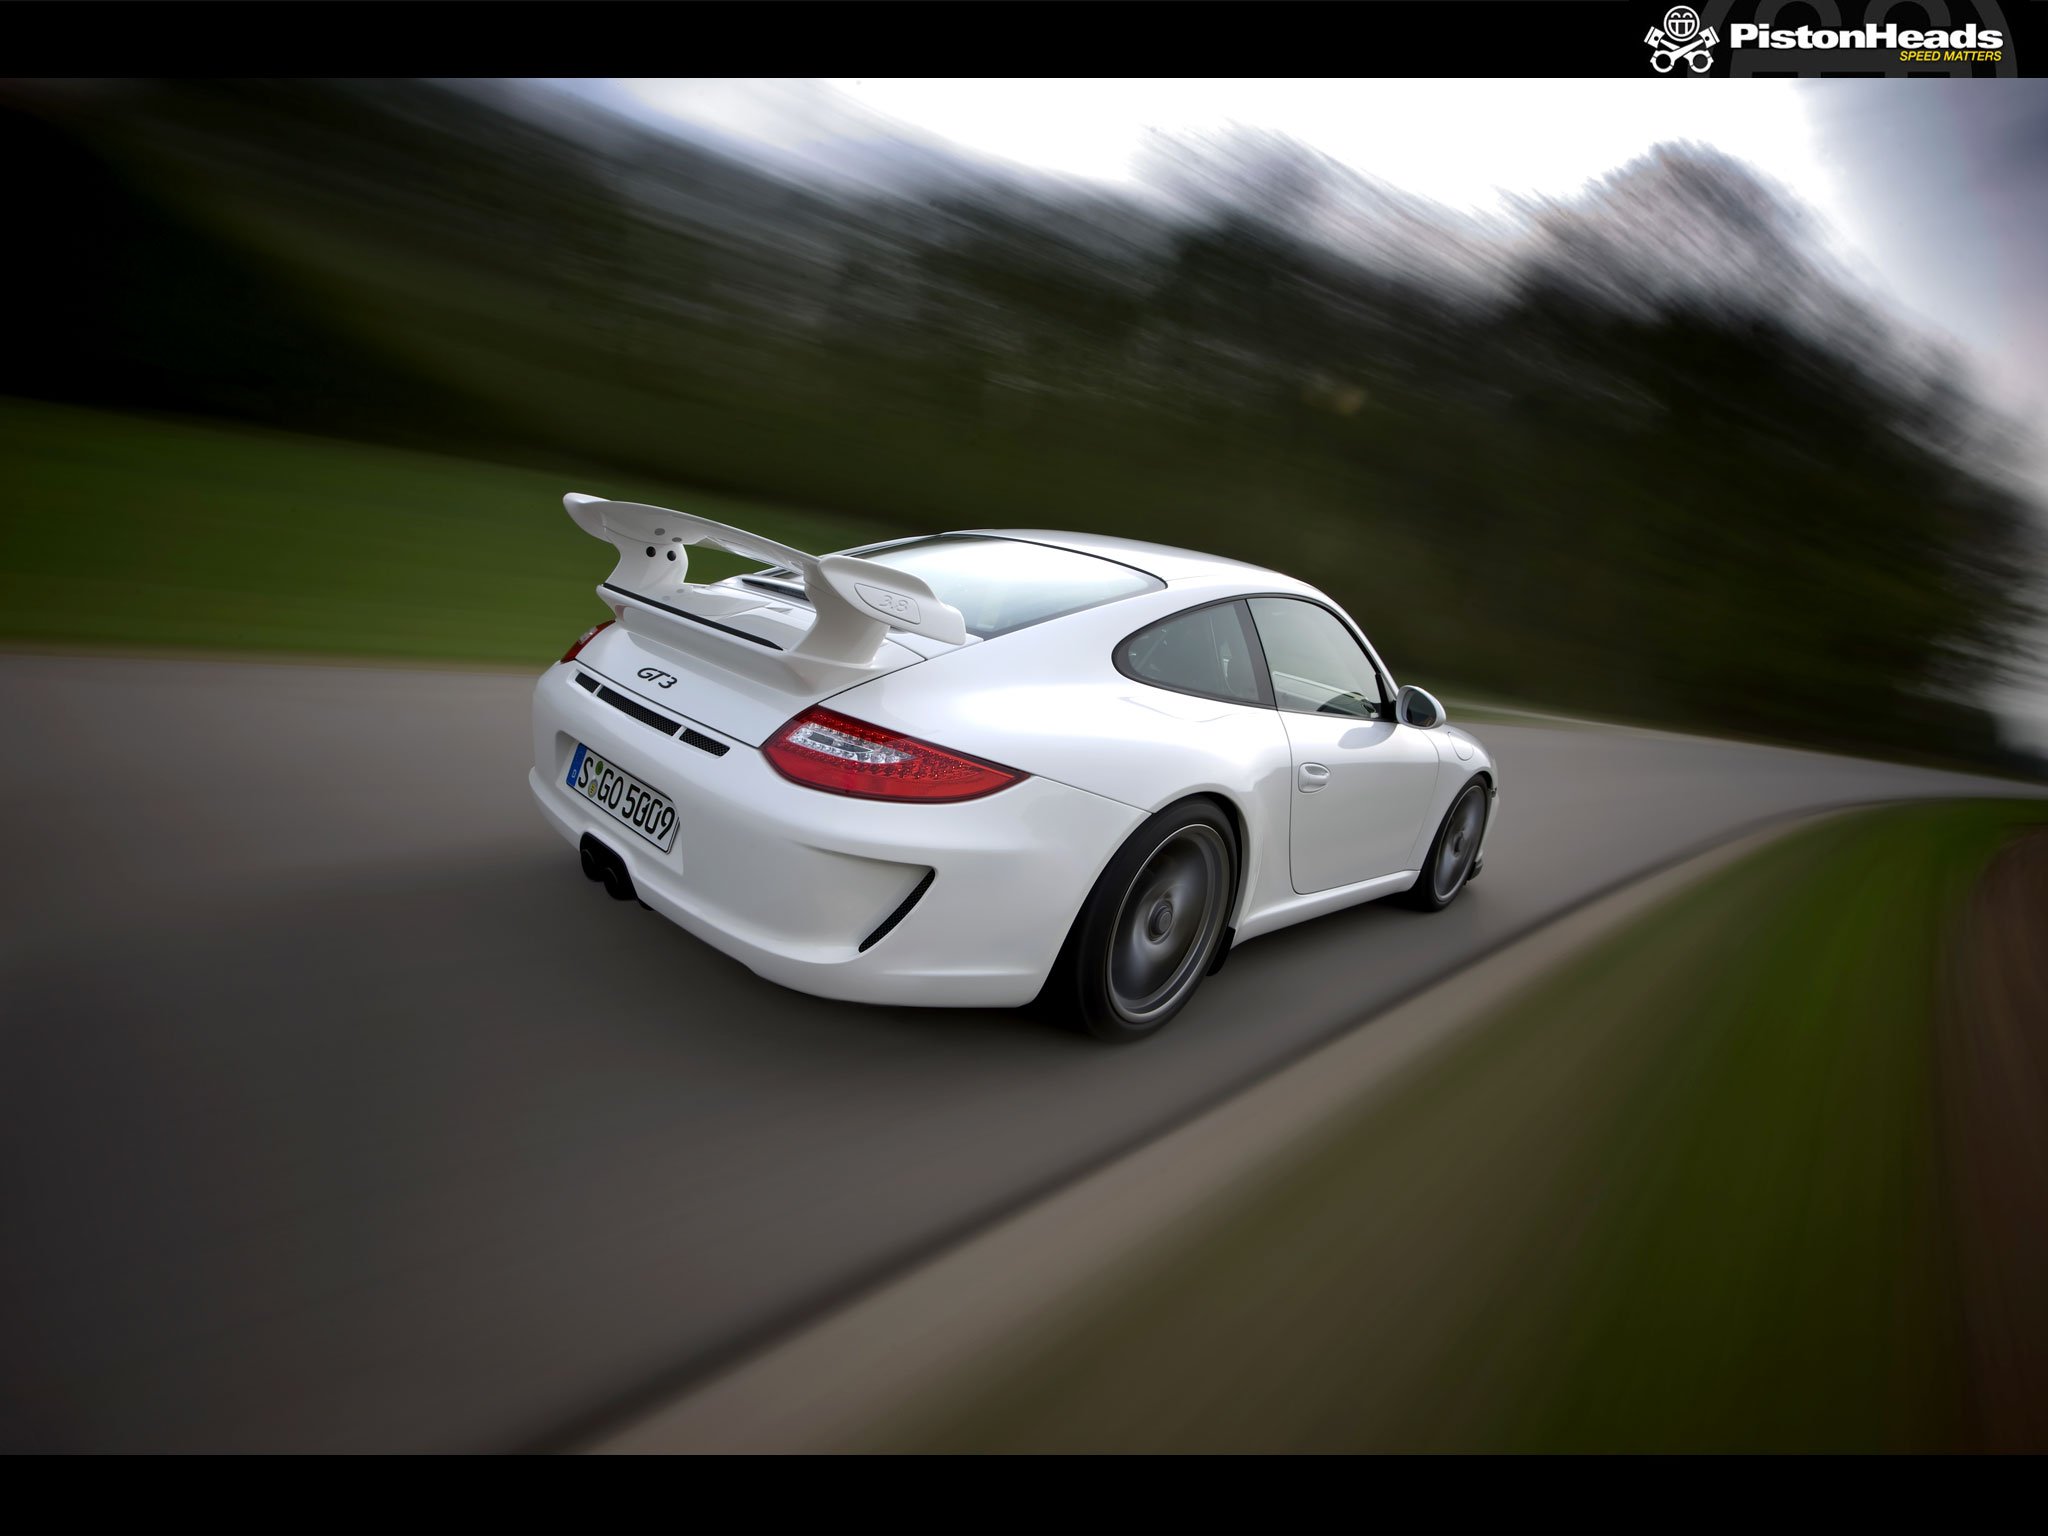 cars, Blurred, Porsche, 911, Gt3 Wallpaper